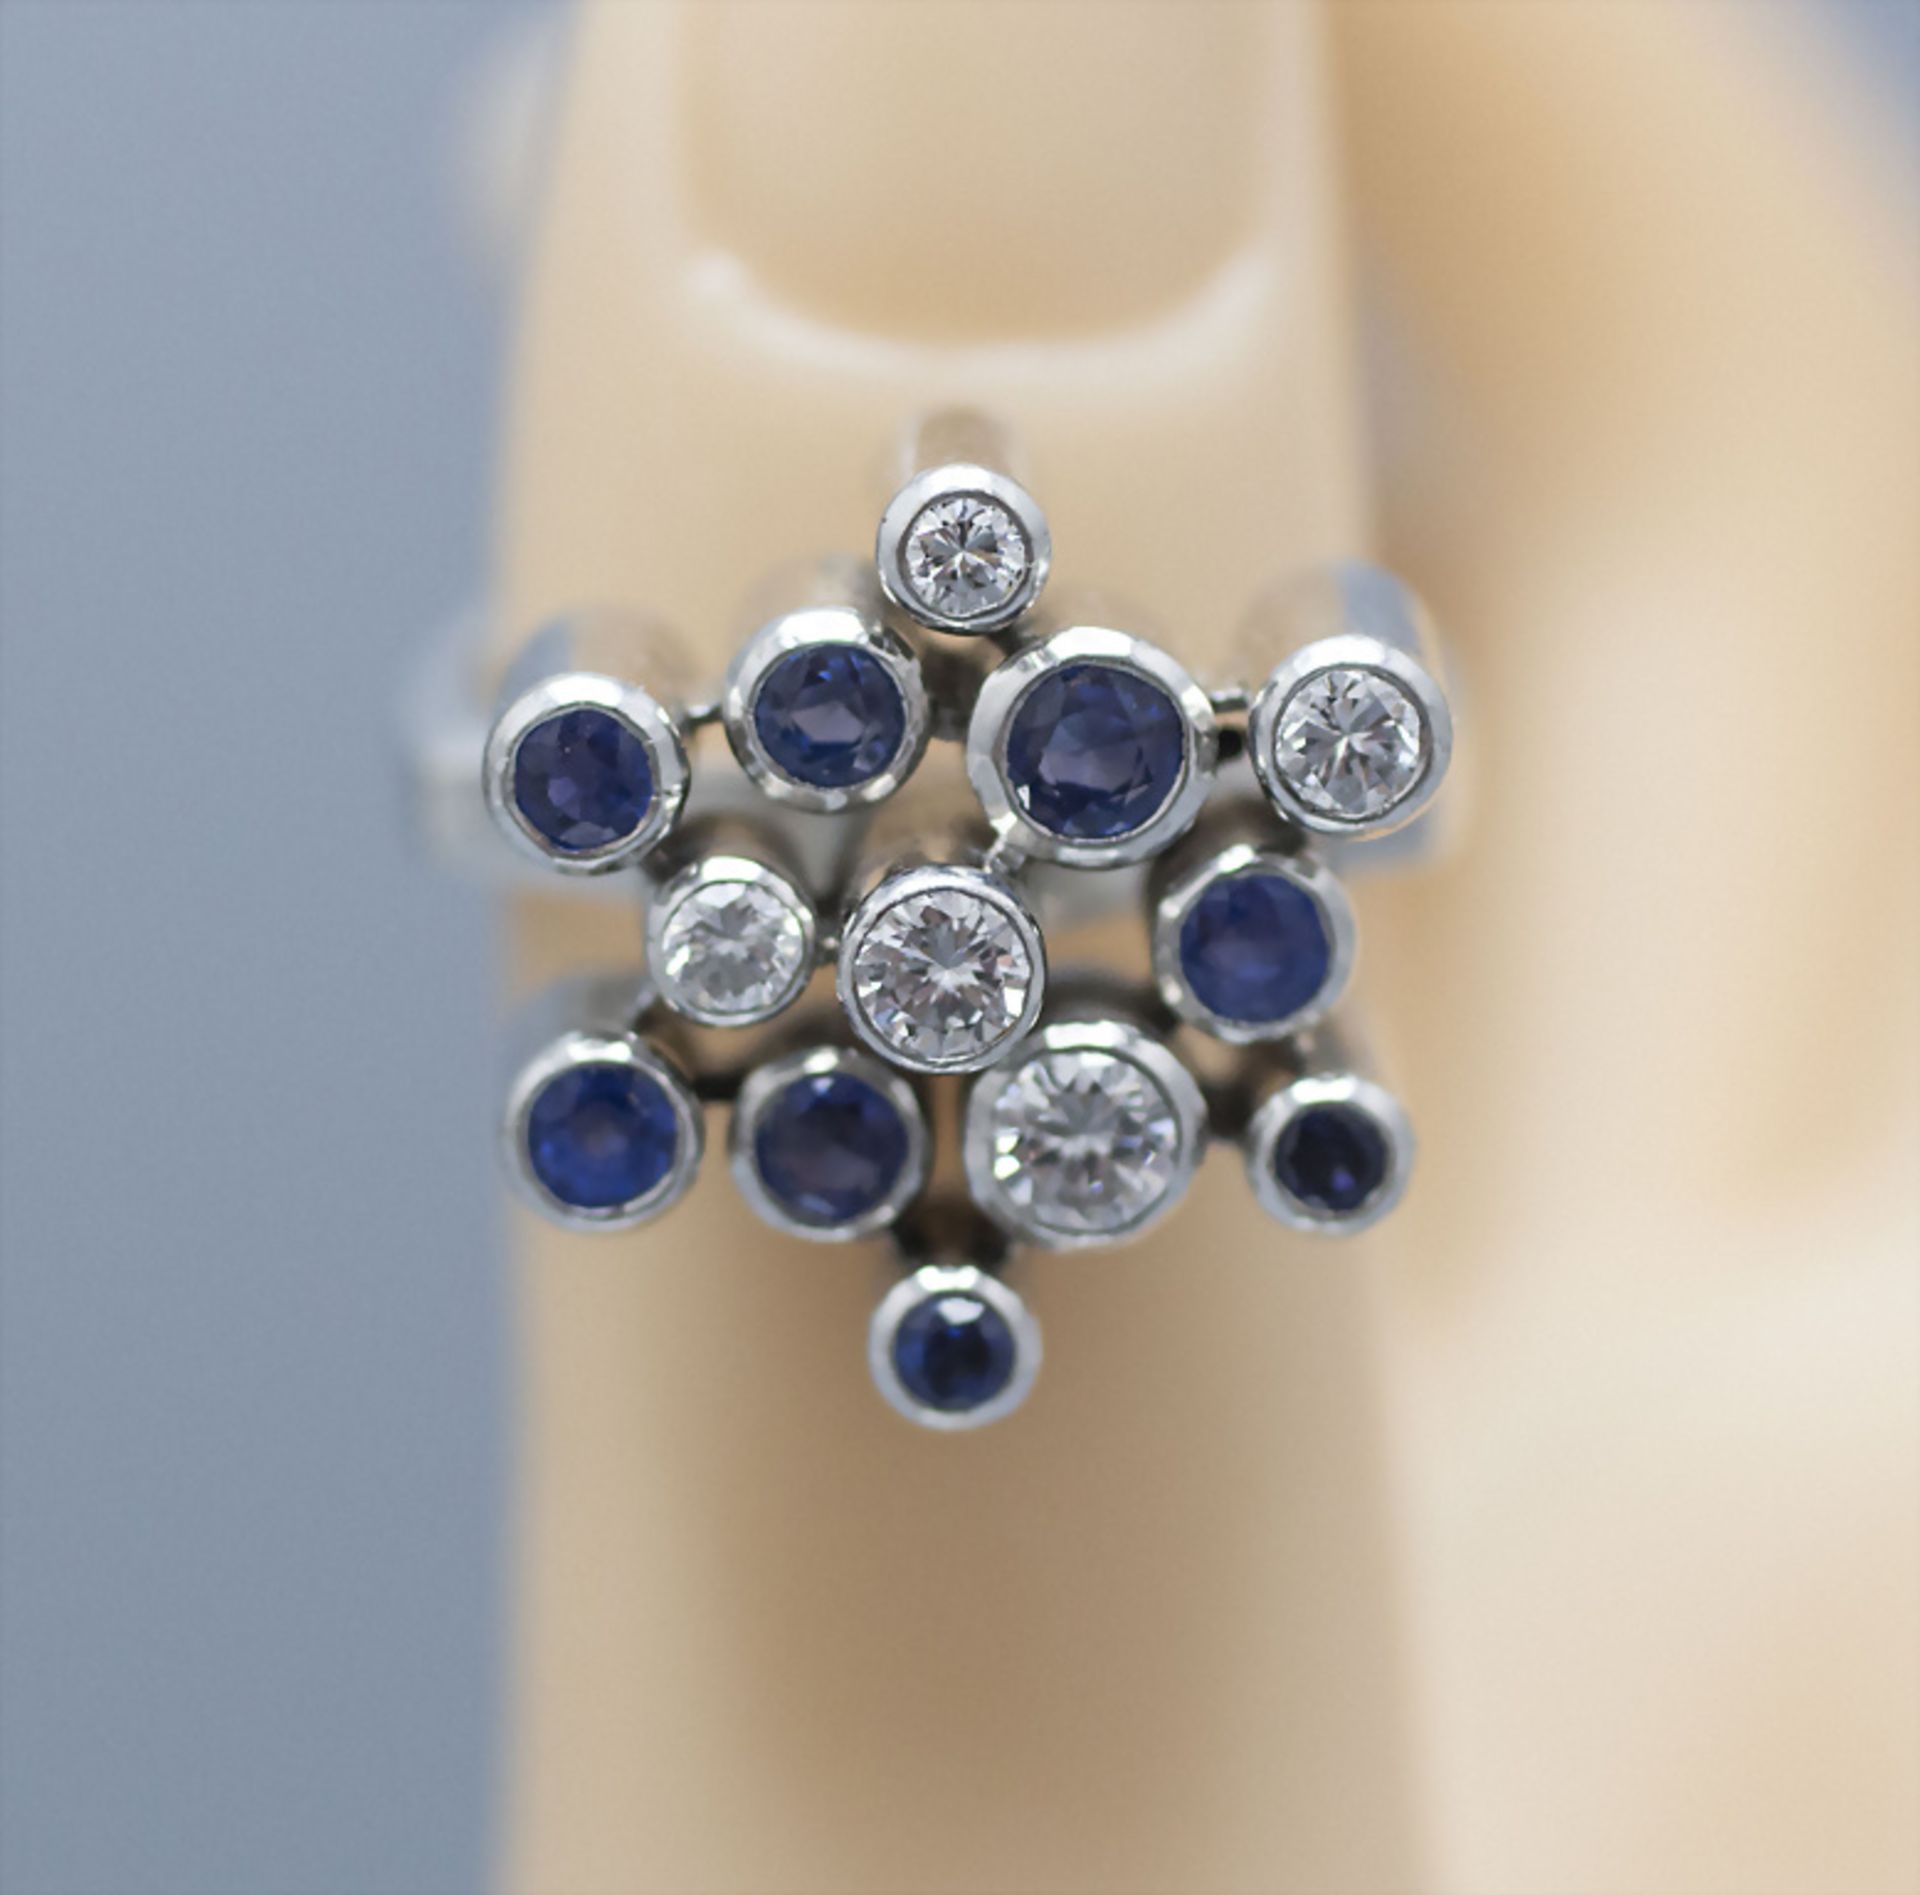 Damenring mit Saphiren und Brillanten / A ladies 18 ct white gold ring with sapphires and diamonds